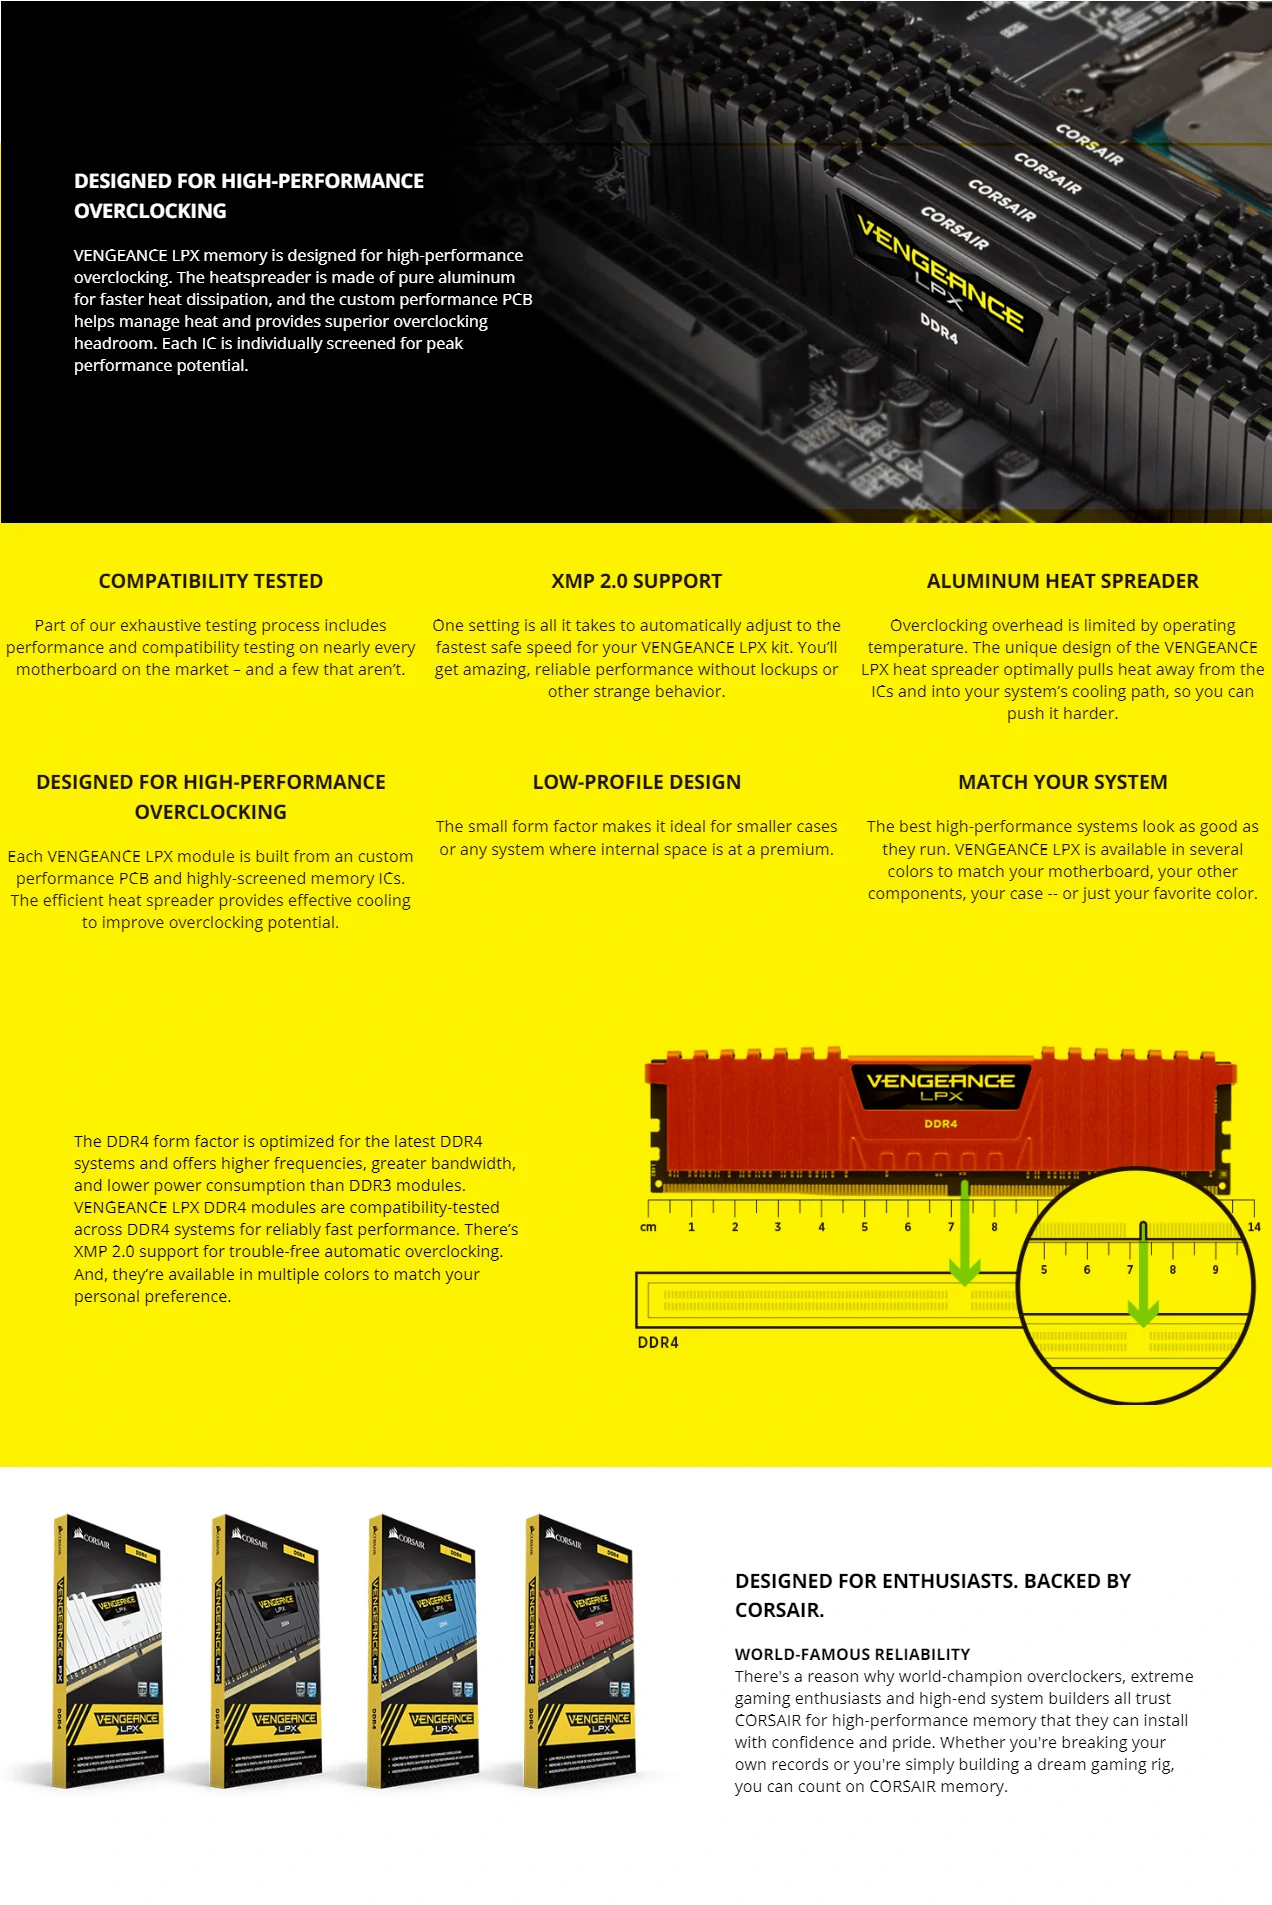 Overview - Corsair Vengeance LPX 16GB (8GB x 2) DDR4 3600MHz Desktop RAM